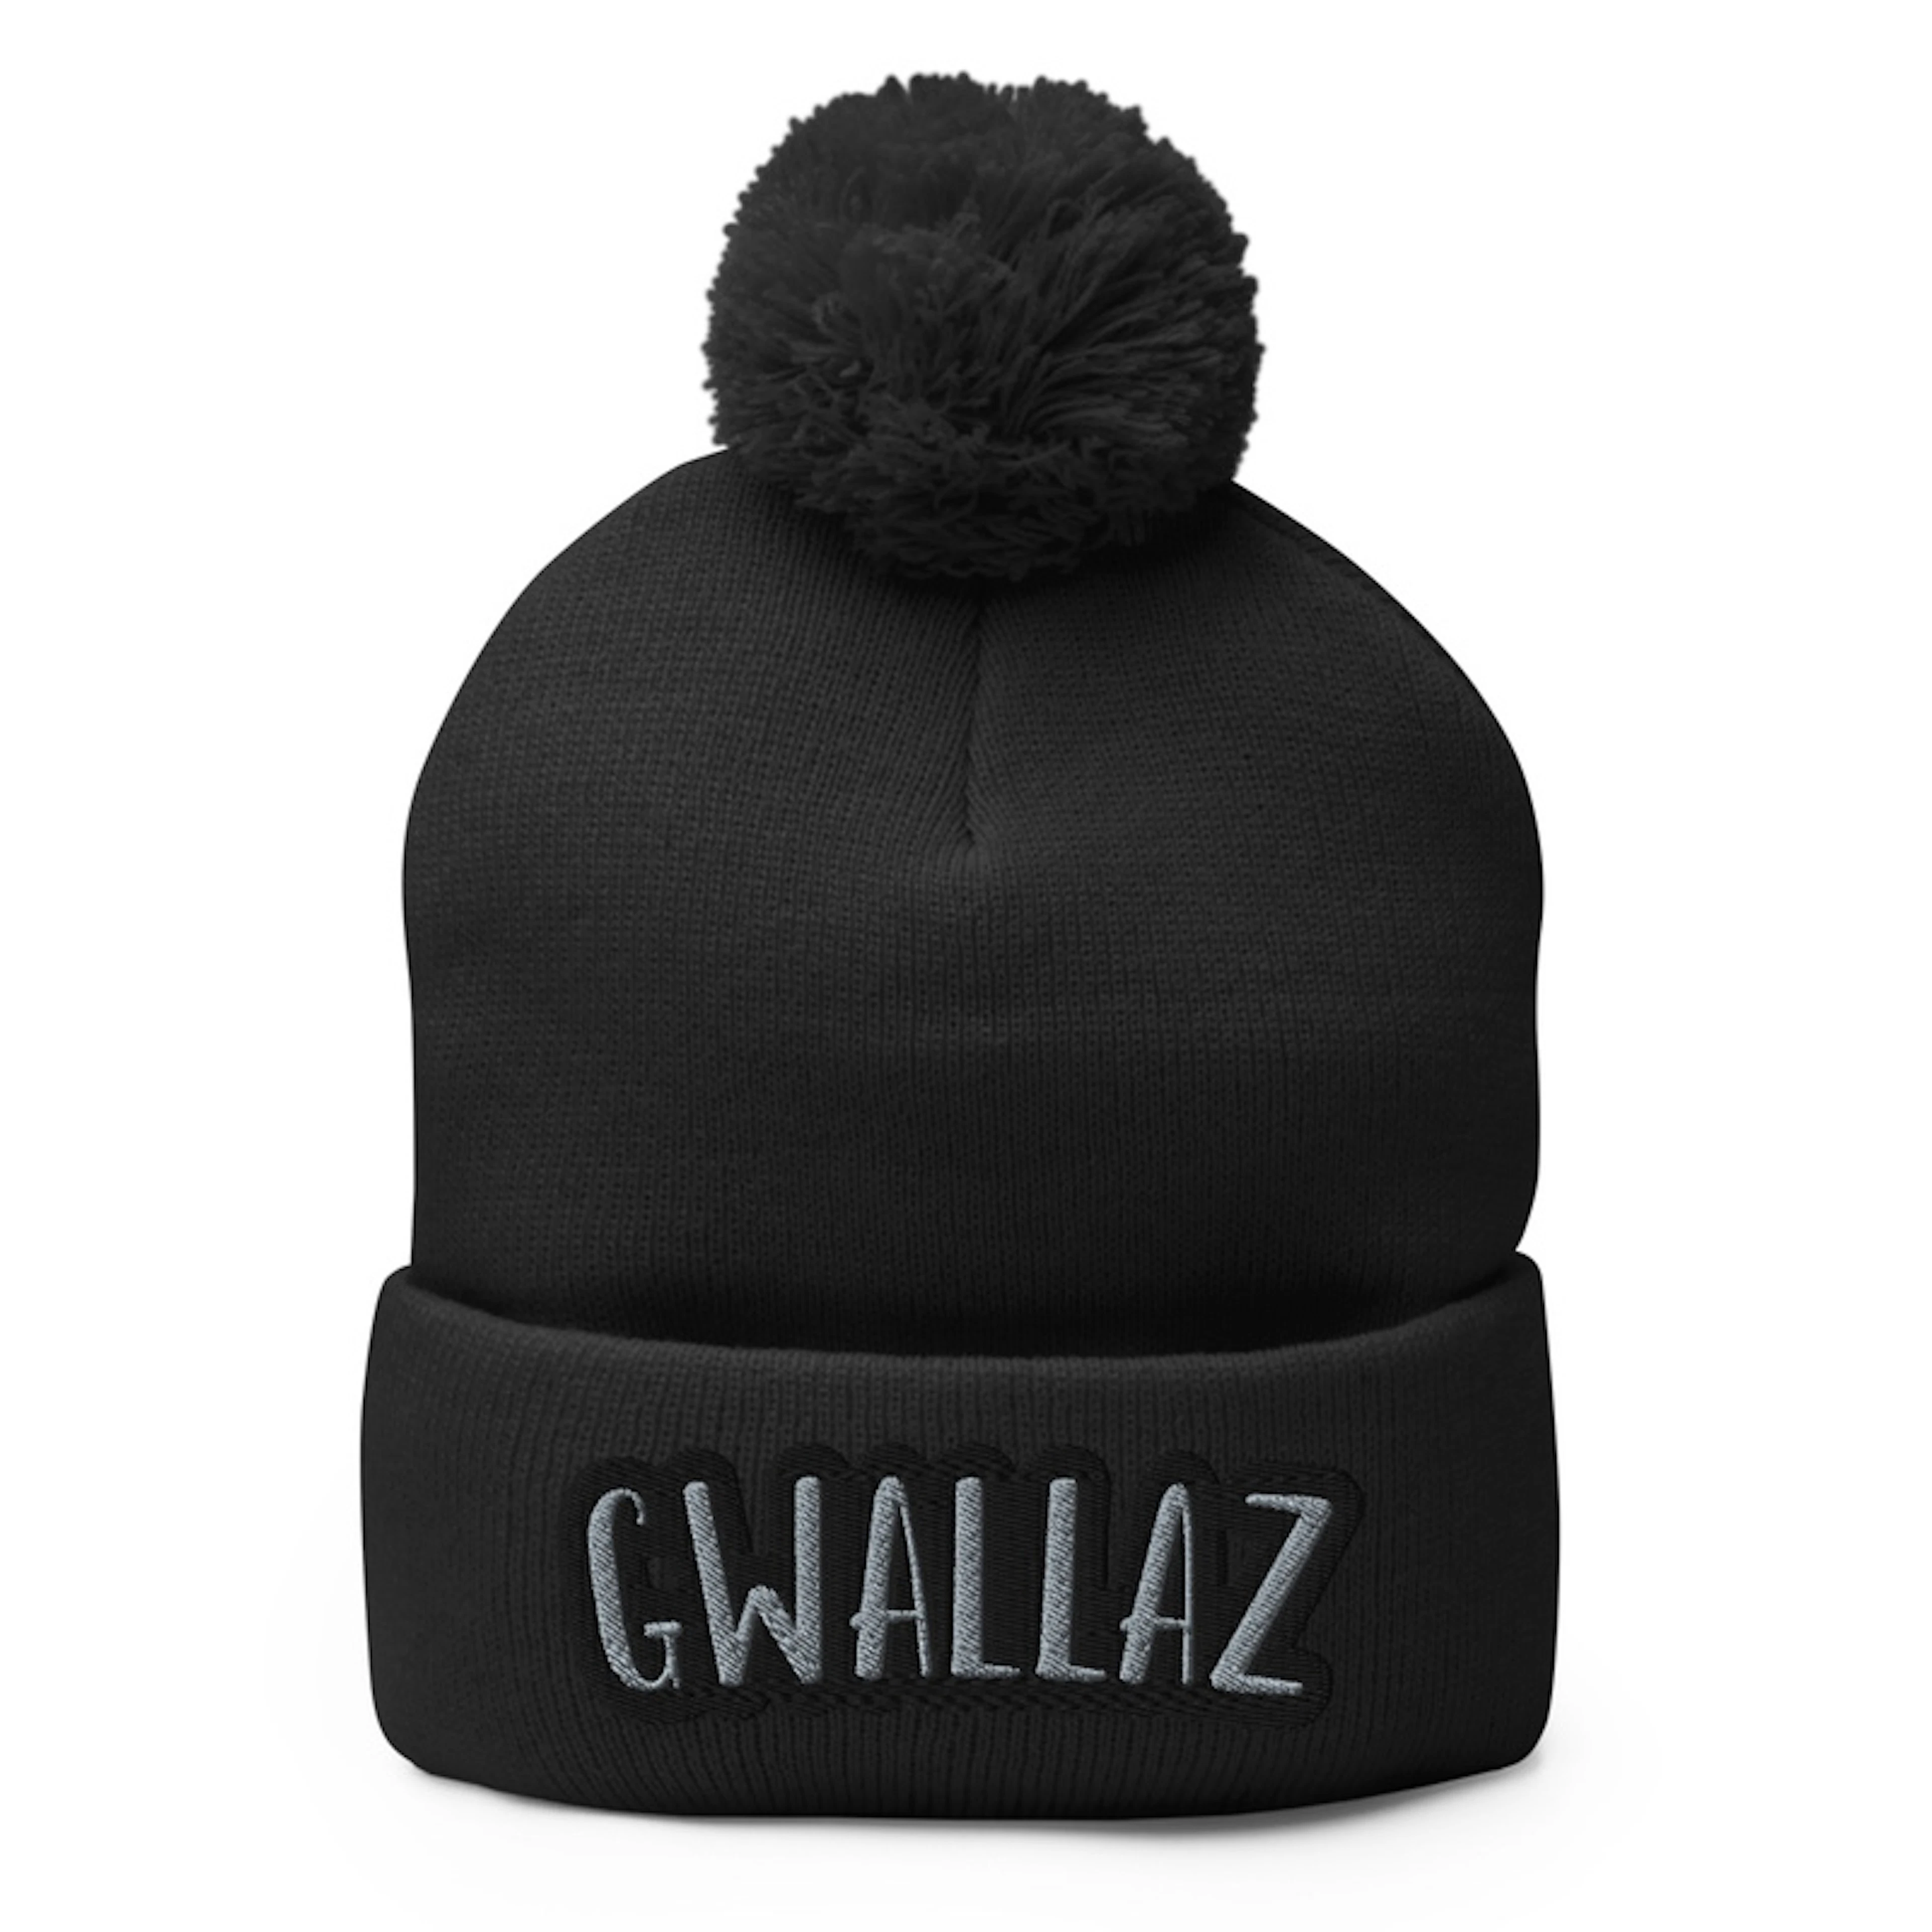 Gwallaz cloth hat 